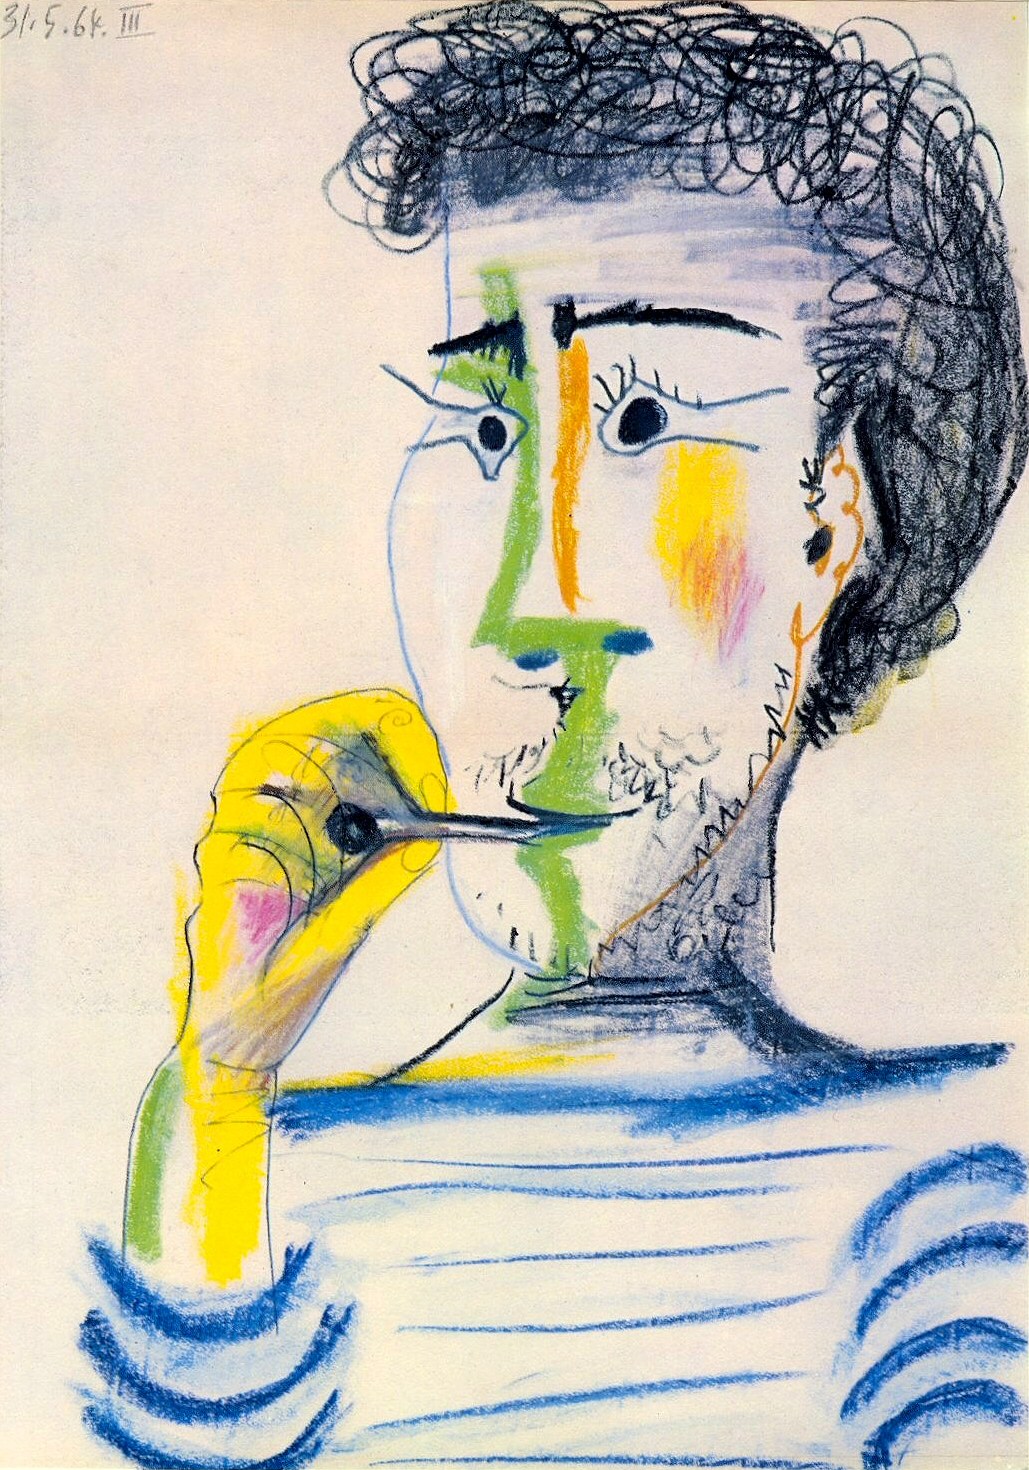 Пабло Пикассо. "Голова бородатого мужчины с сигаретой". 31.05.1964.